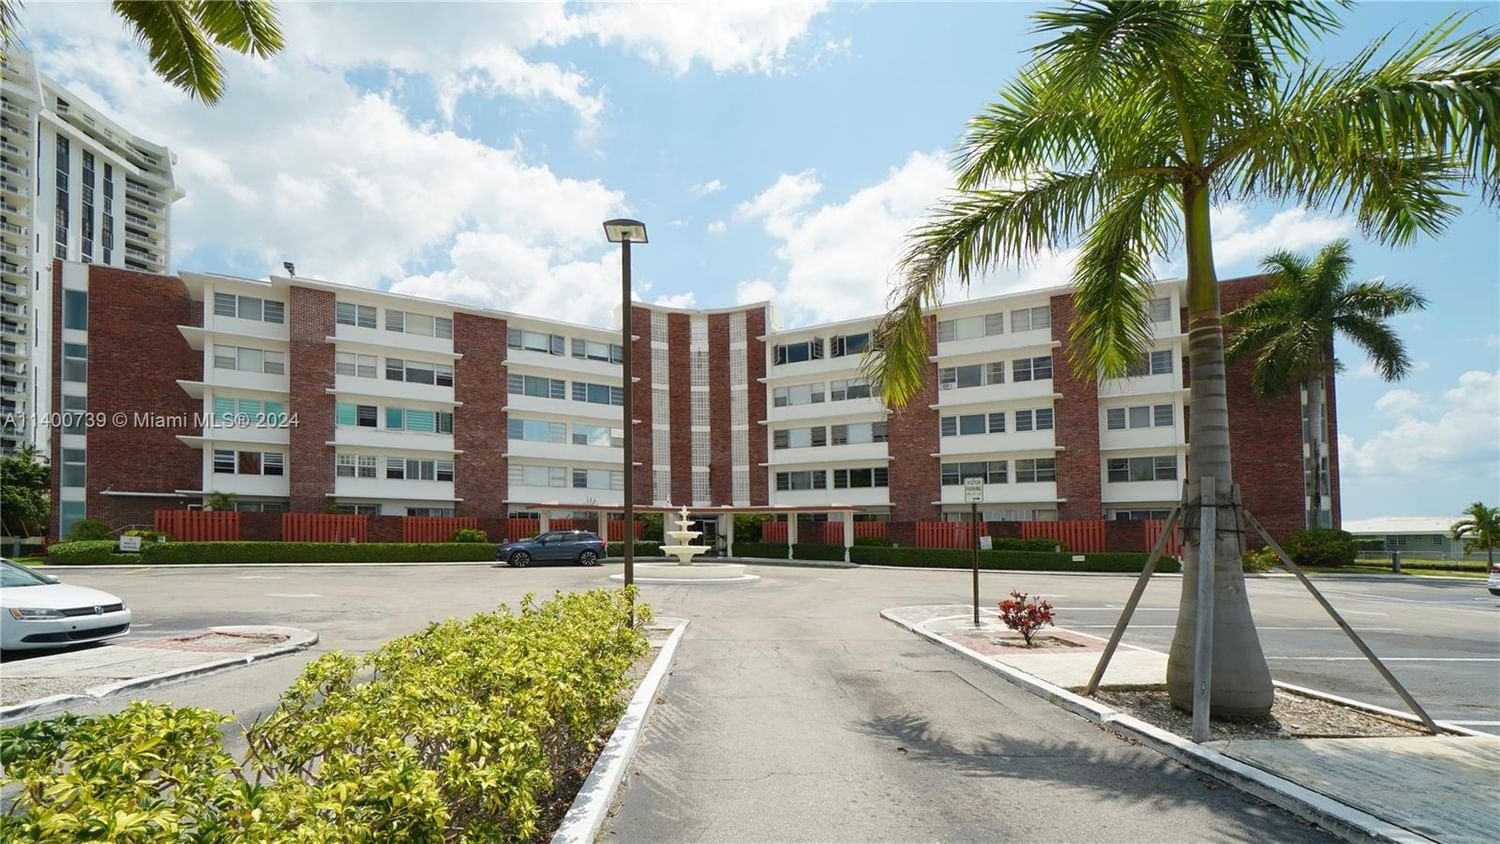 Real estate property located at 1700 105th St #310, Miami-Dade County, THE SHORES CONDO, Miami Shores, FL